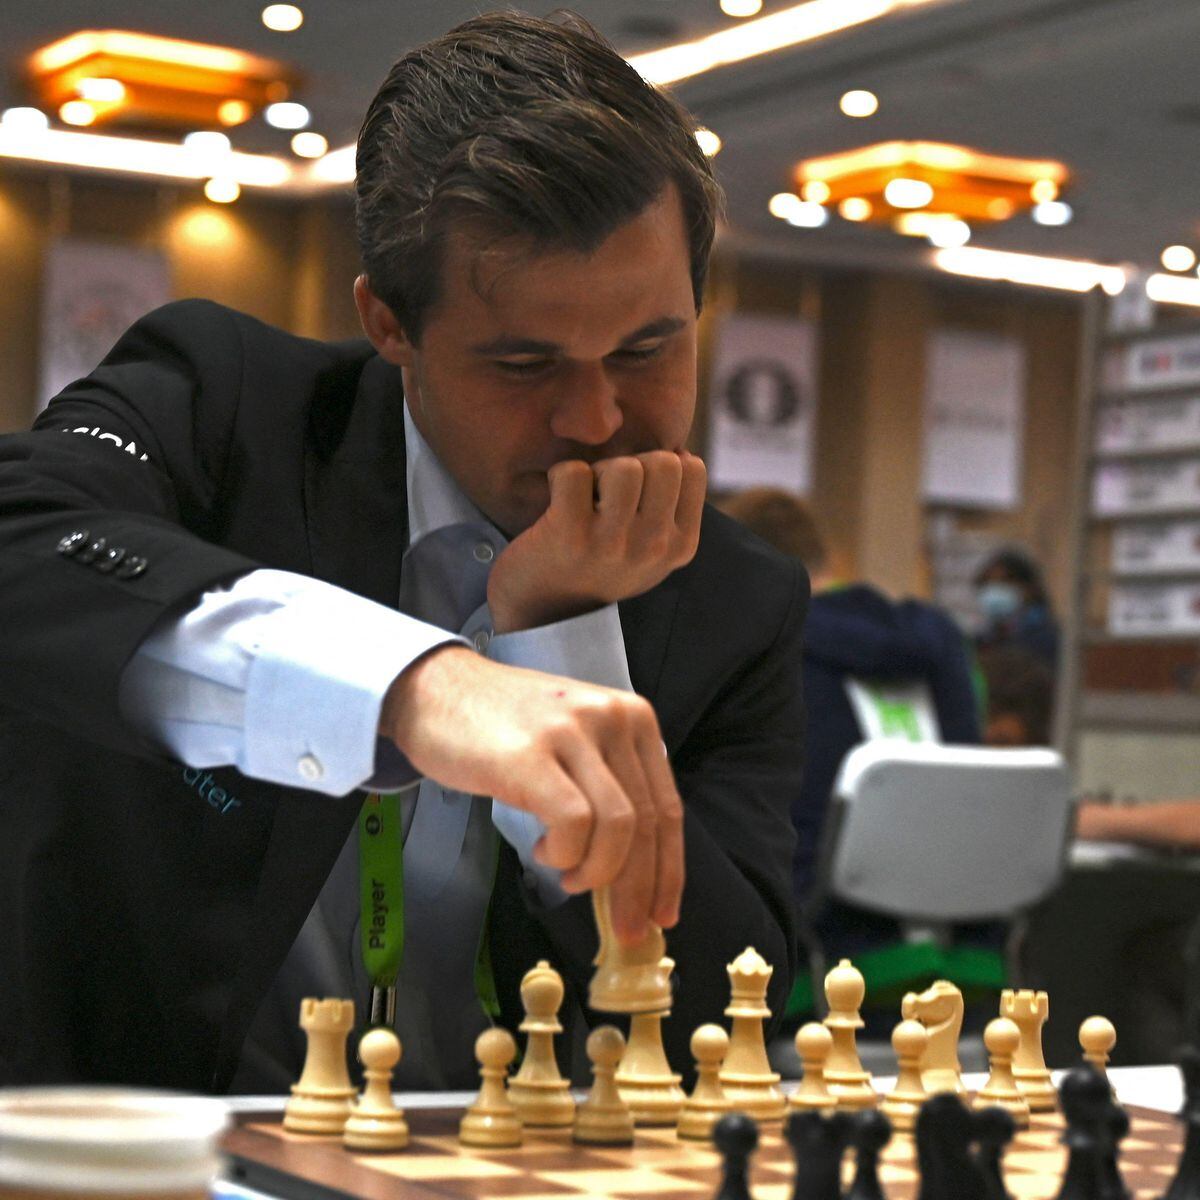 Xadrez: sex toy, código morse e engine; entenda toda a polêmica entre  Magnus Carlsen e Hans Niemann - Estadão